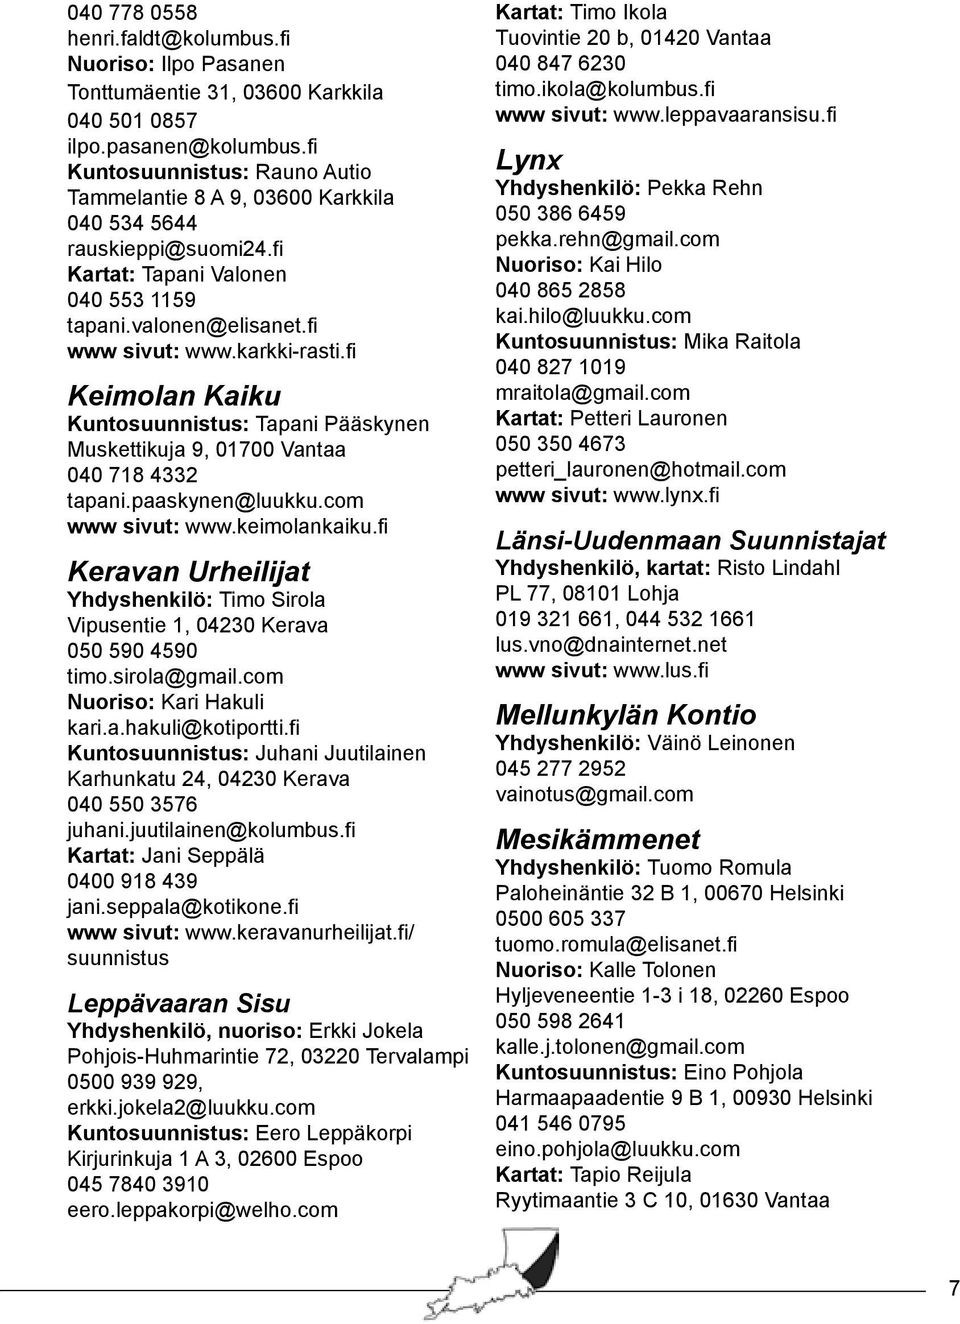 fi Keimolan Kaiku Kuntosuunnistus: Tapani Pääskynen Muskettikuja 9, 01700 Vantaa 040 718 4332 tapani.paaskynen@luukku.com www sivut: www.keimolankaiku.